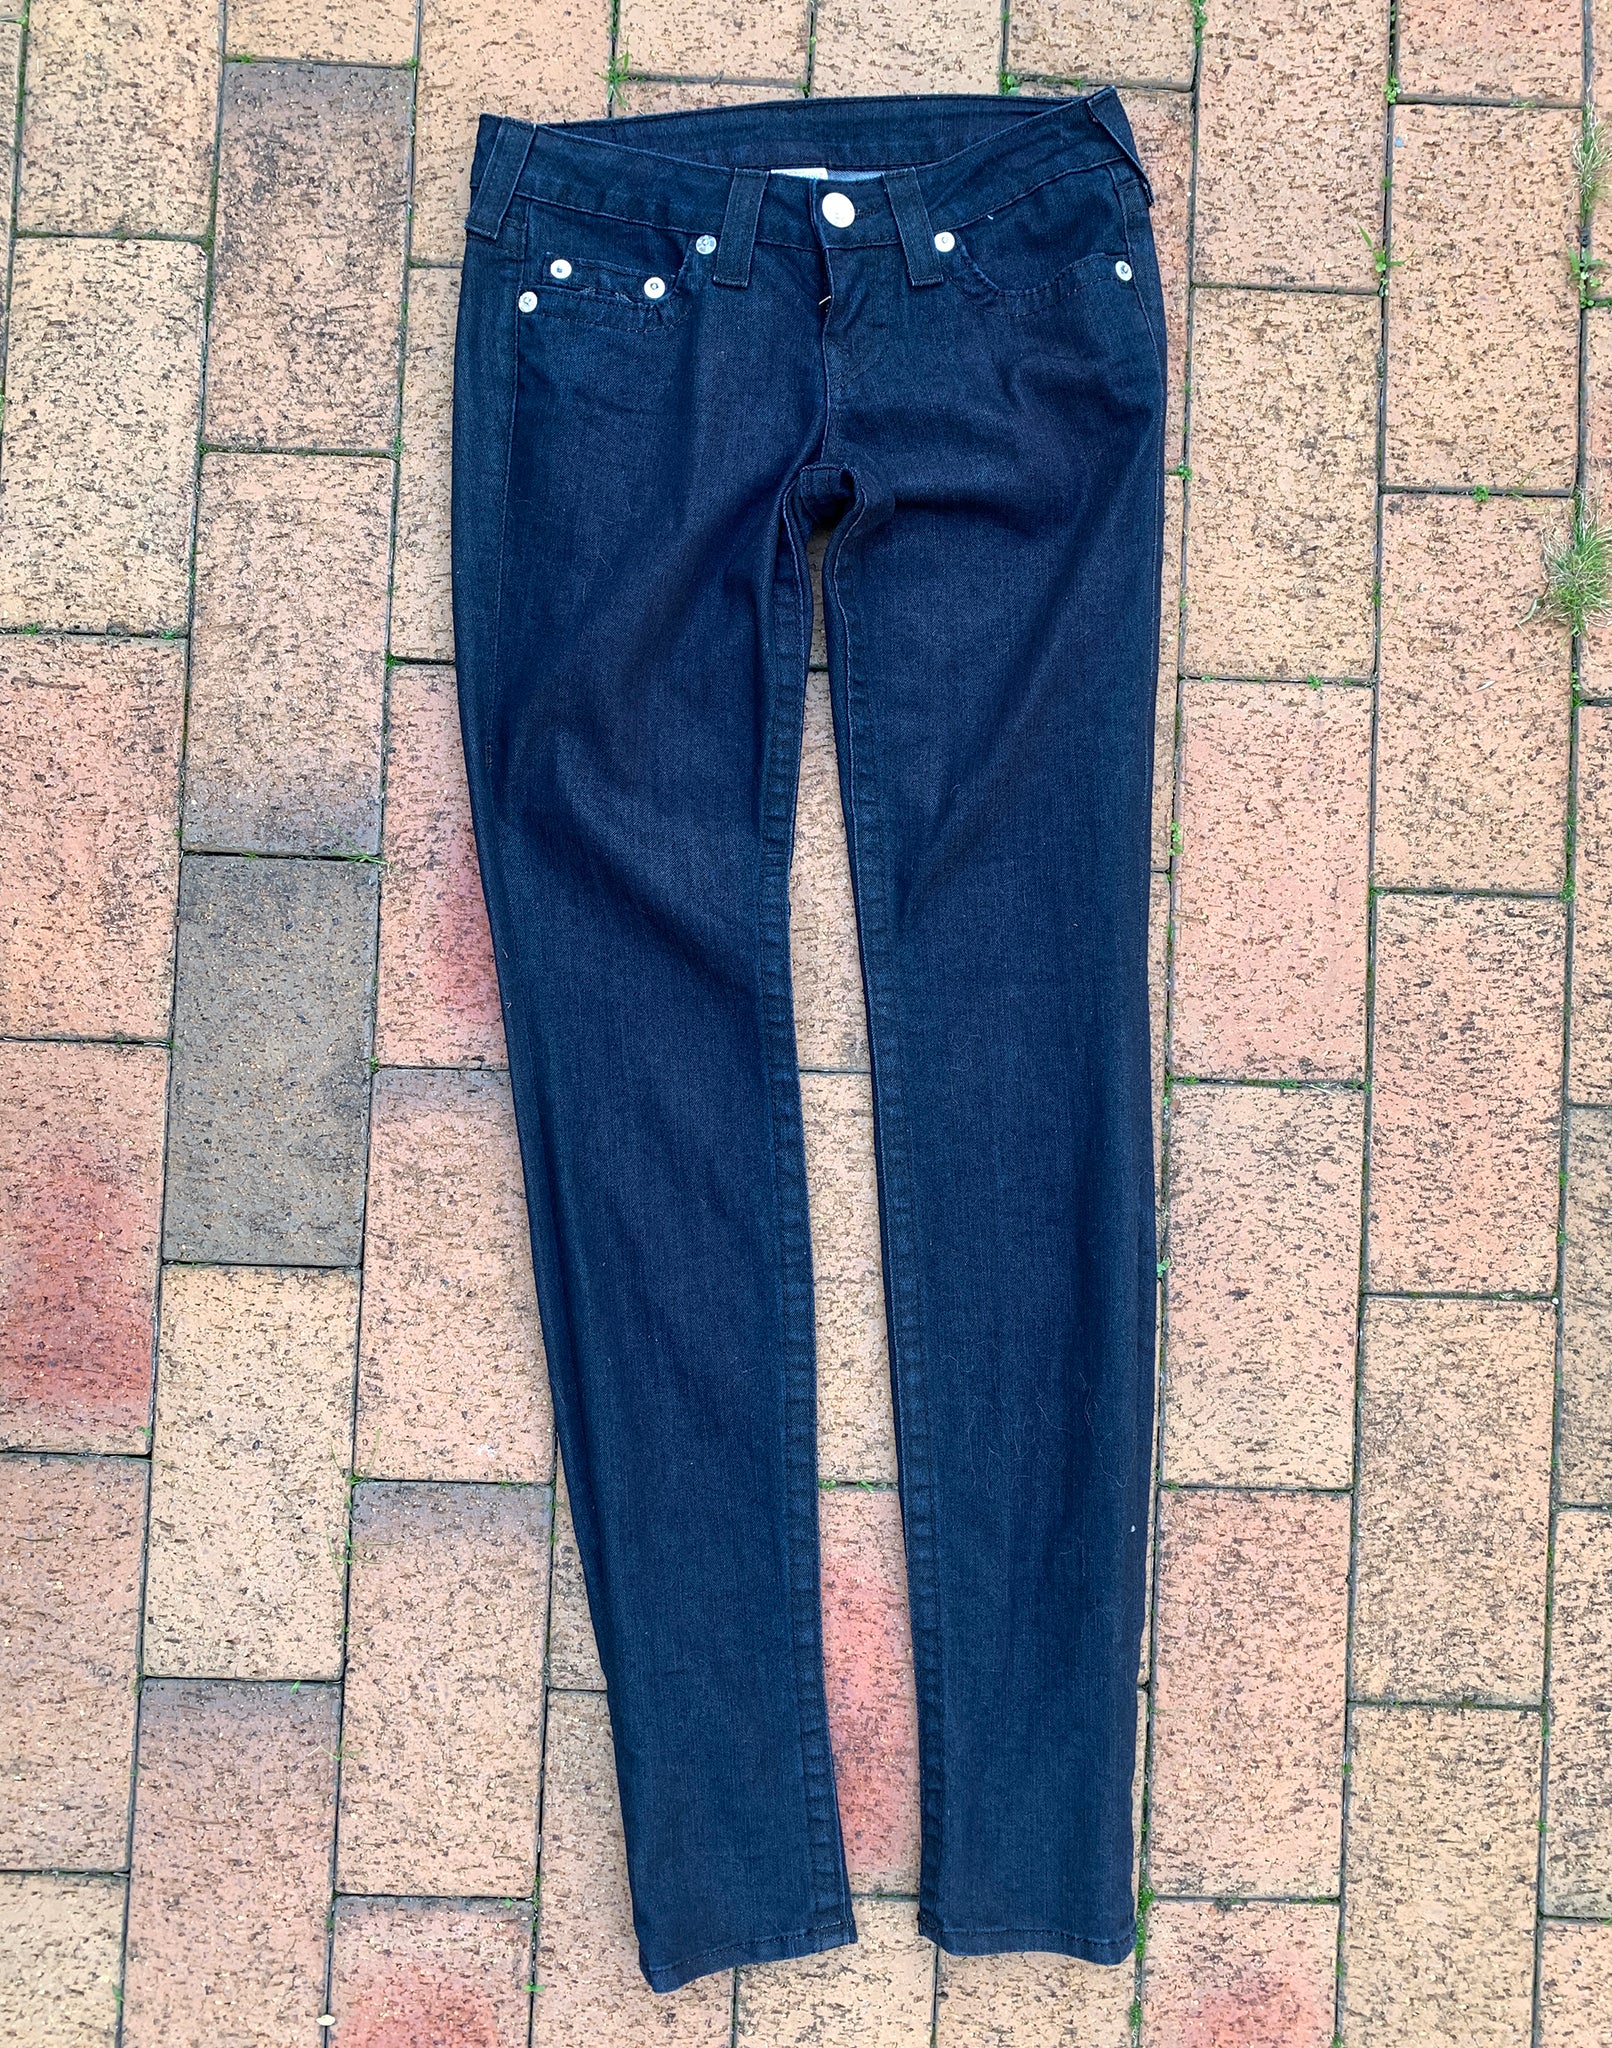 True Religion Dark Skinny Jeans Size 26 XS/S Y2K